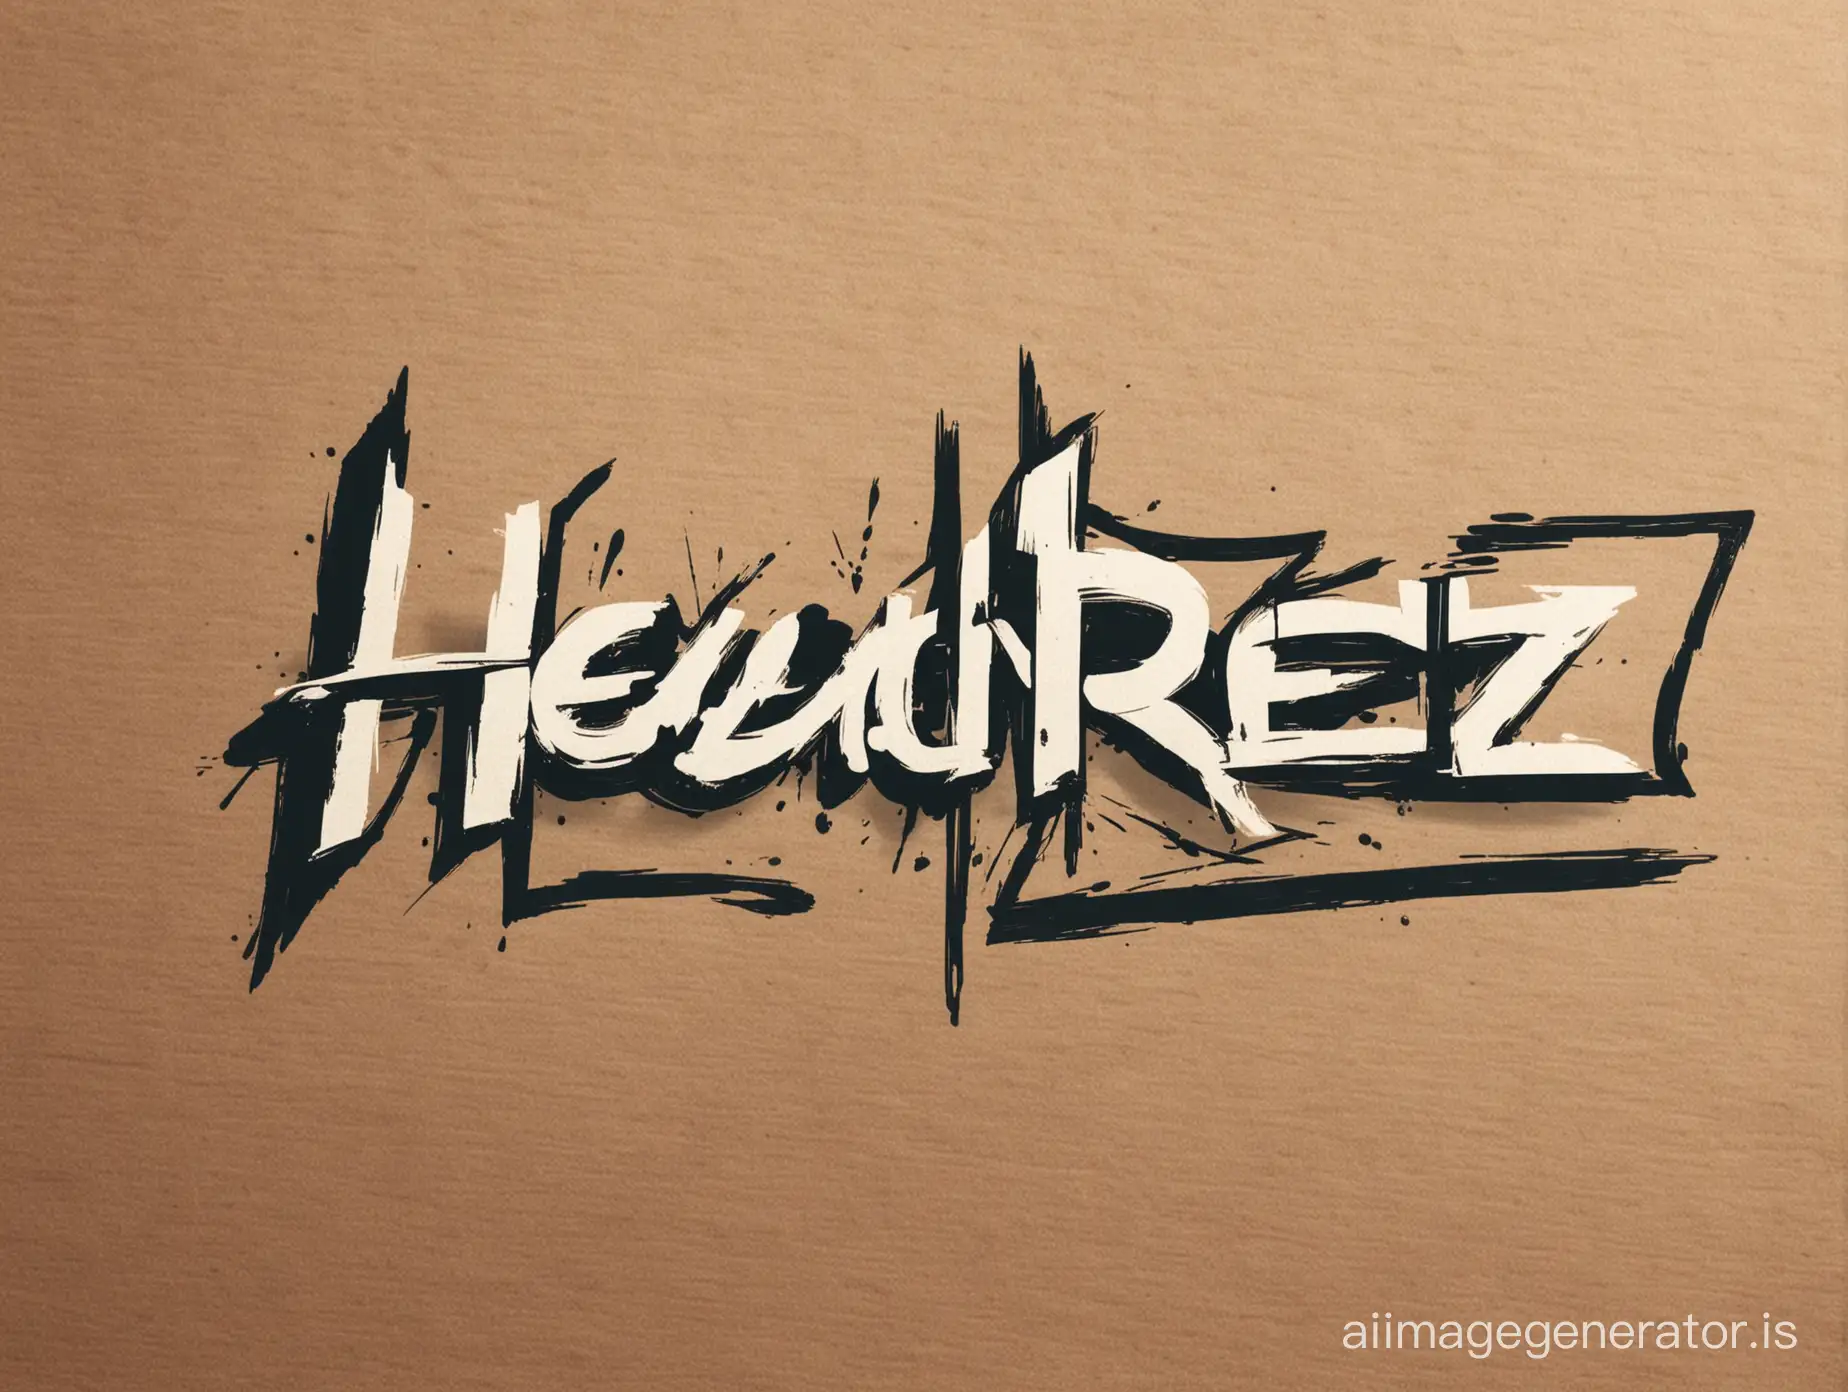 Colorful-Abstract-HeadRez-Logo-Design